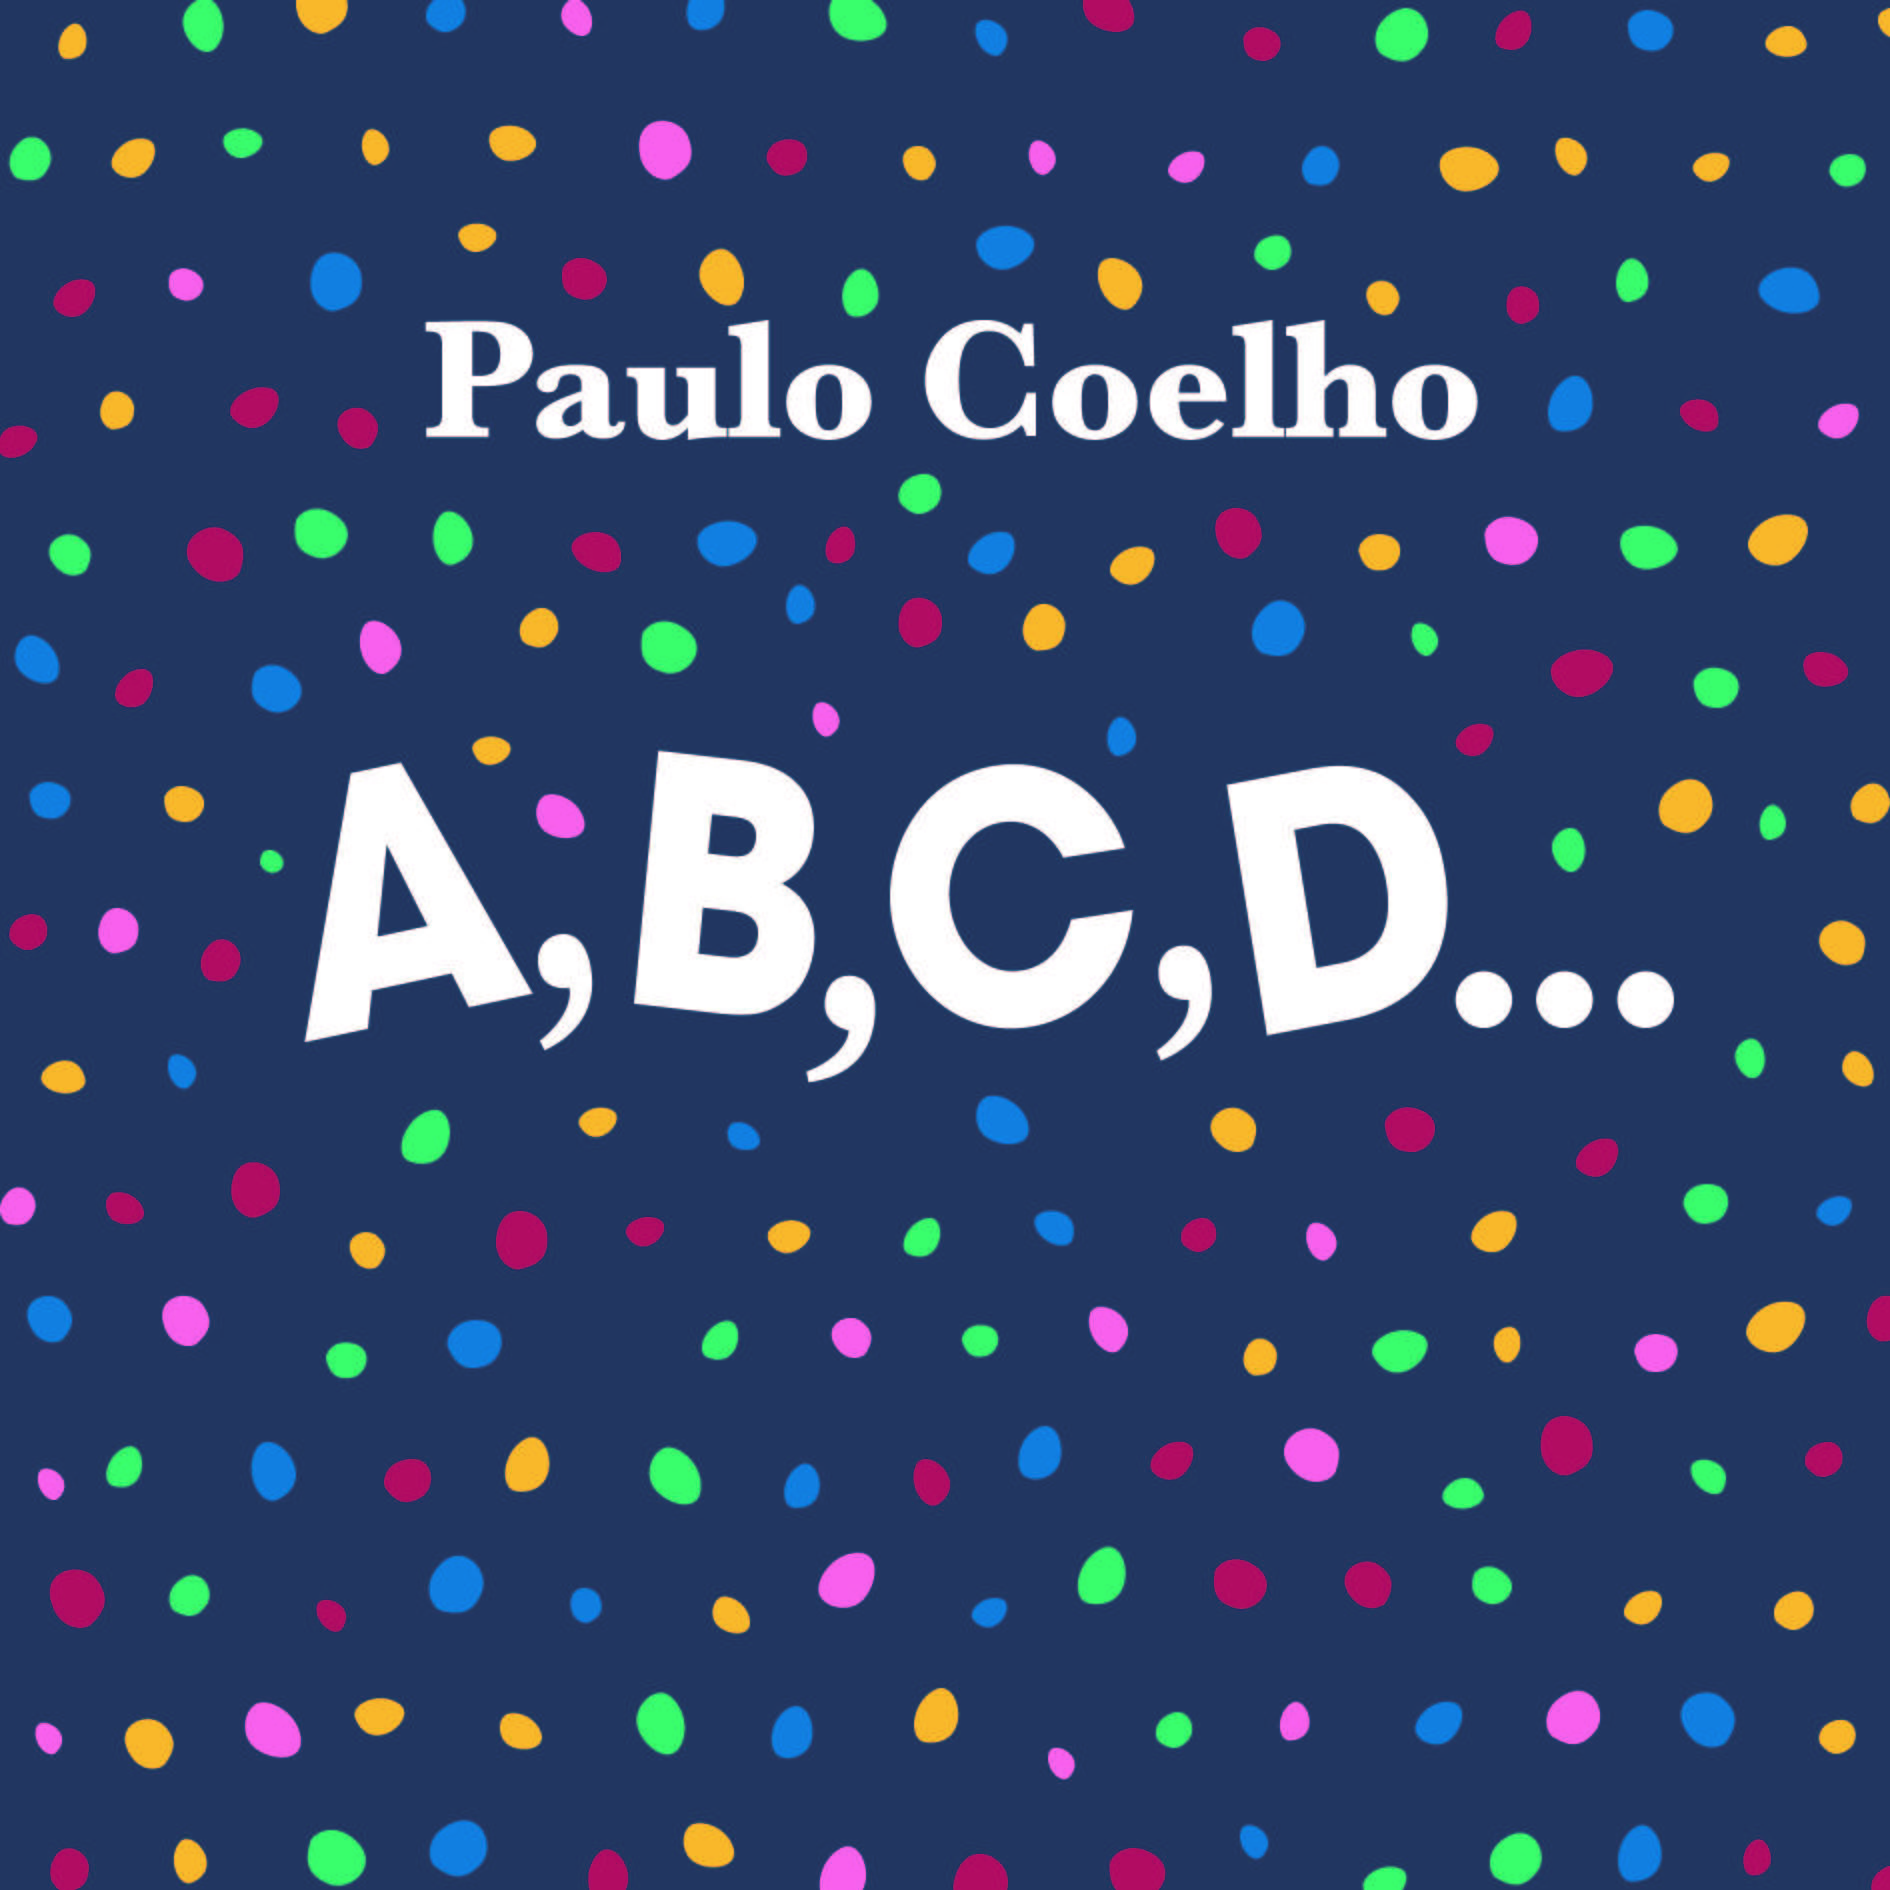 Paulo Coelho - ABCD